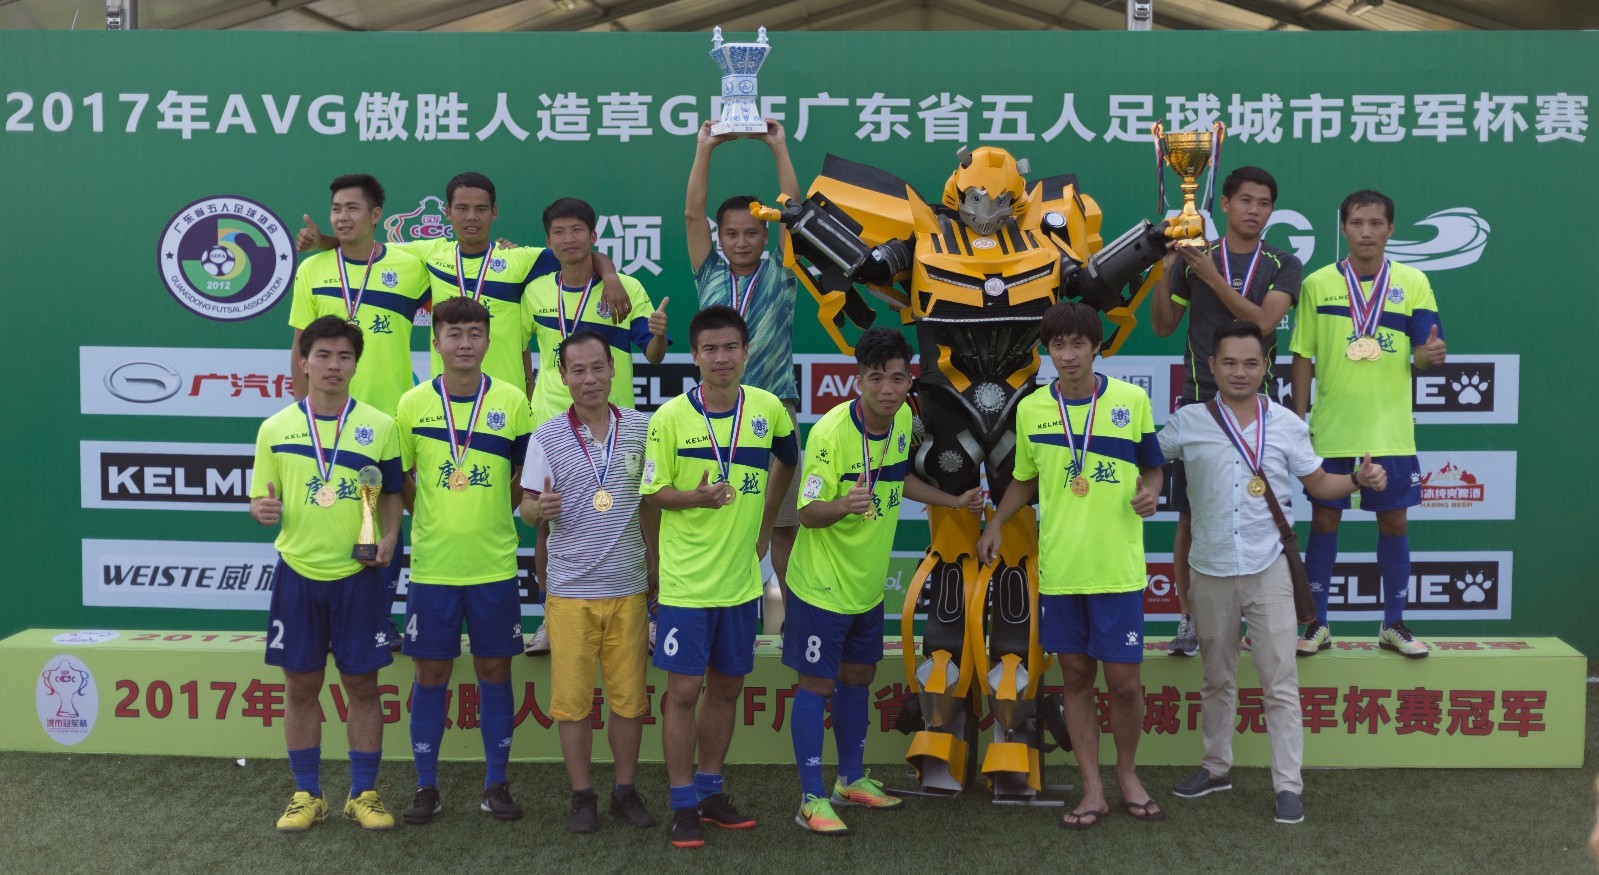 第七届广东省五人足球城市冠军杯,诠释着足球